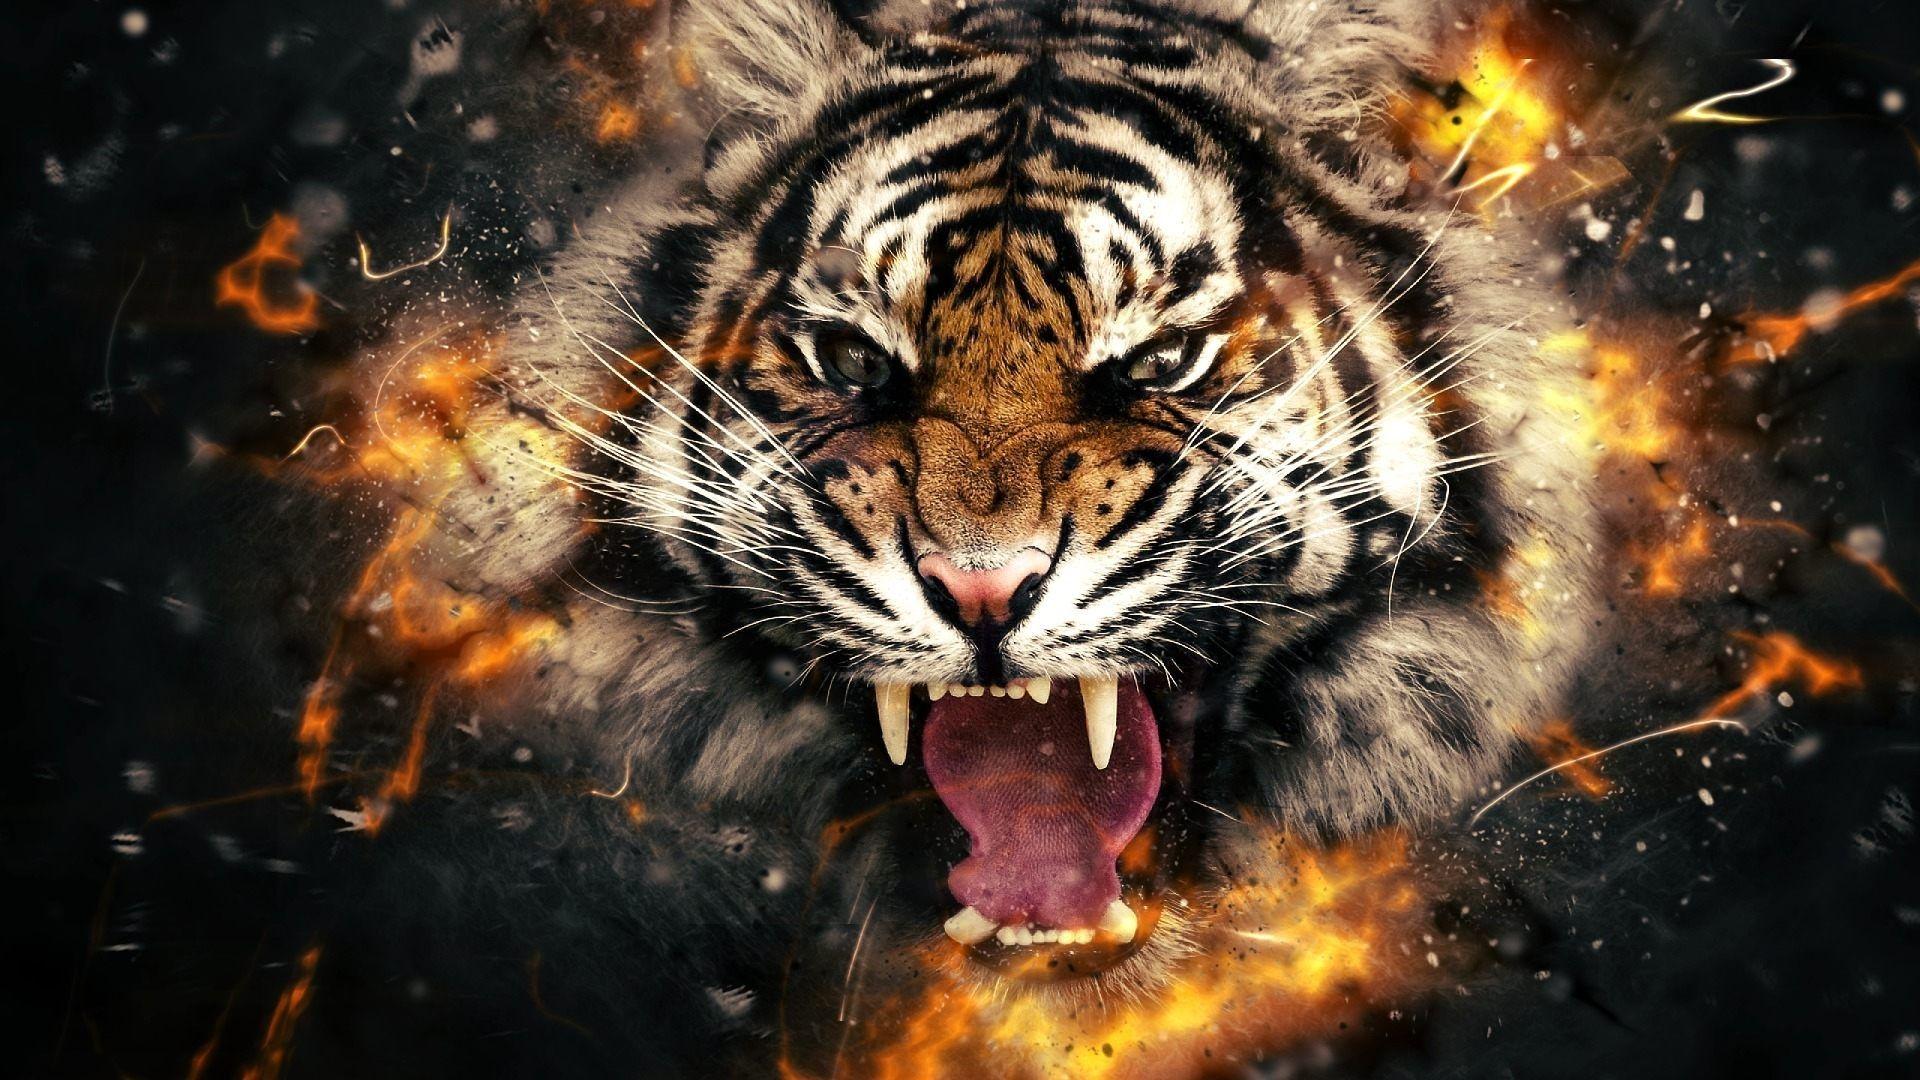 3D 4k Tiger Wallpaper